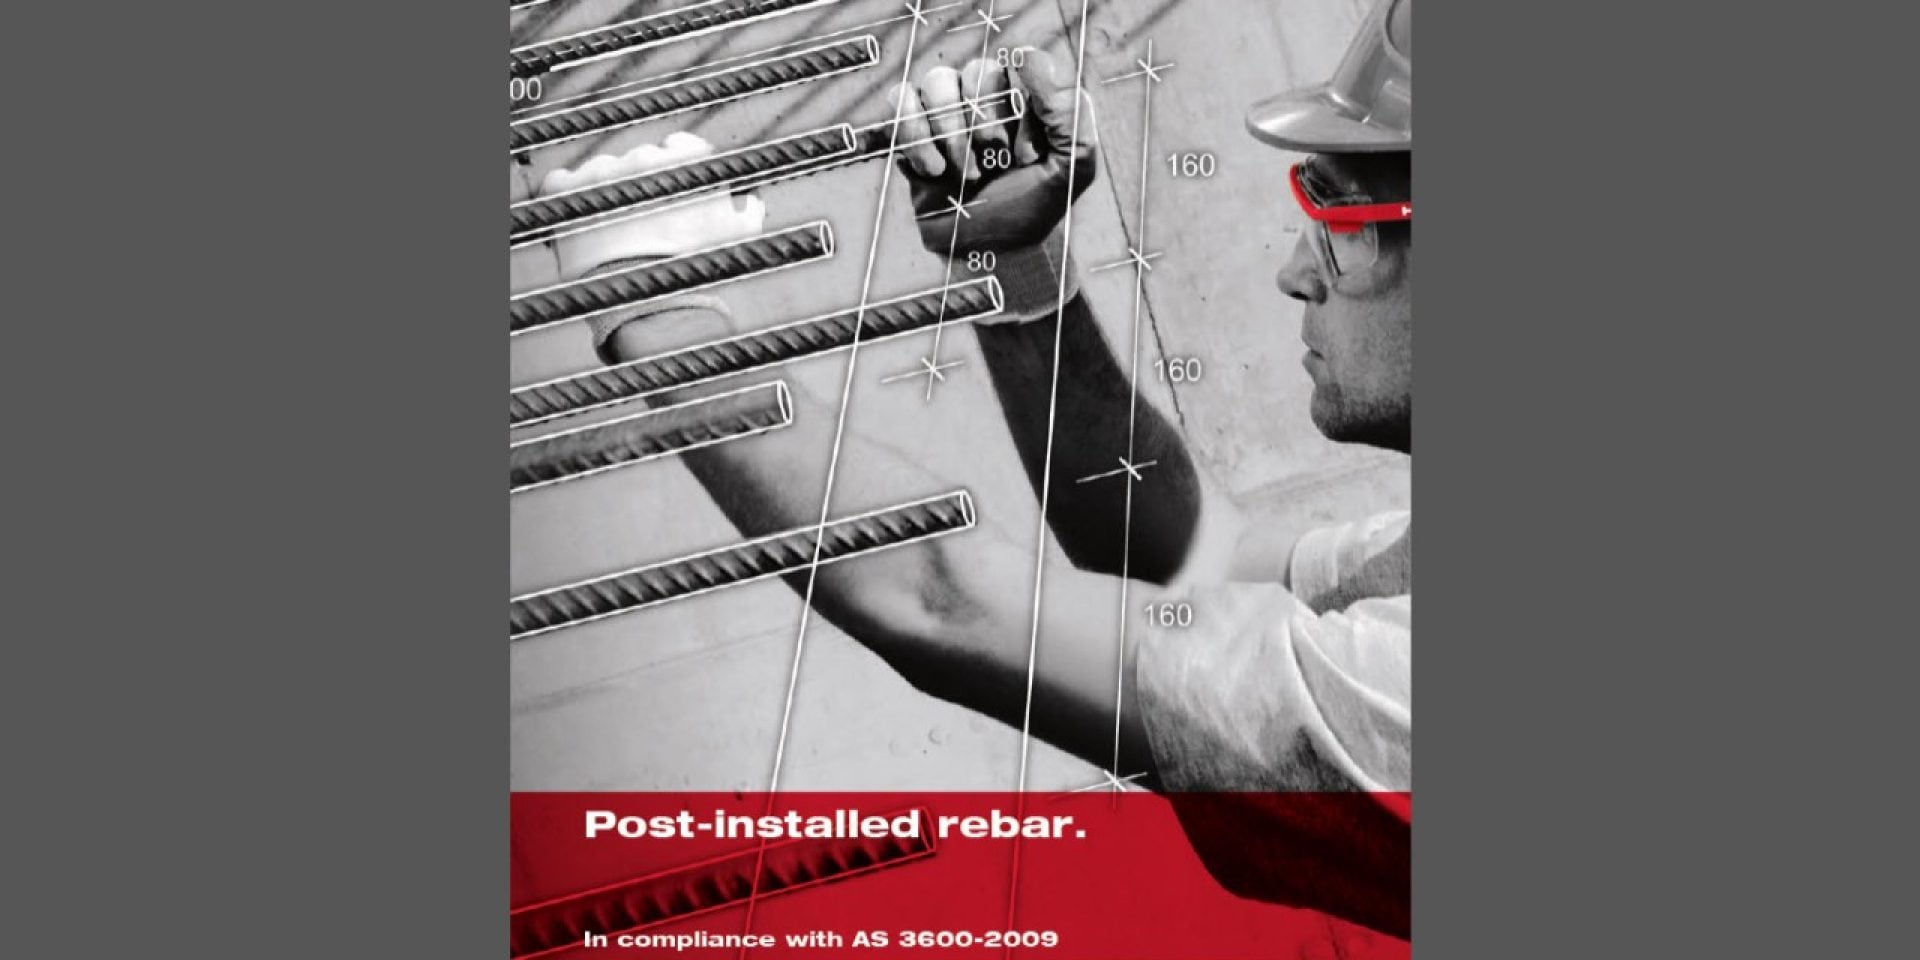 Post-installed rebar manual